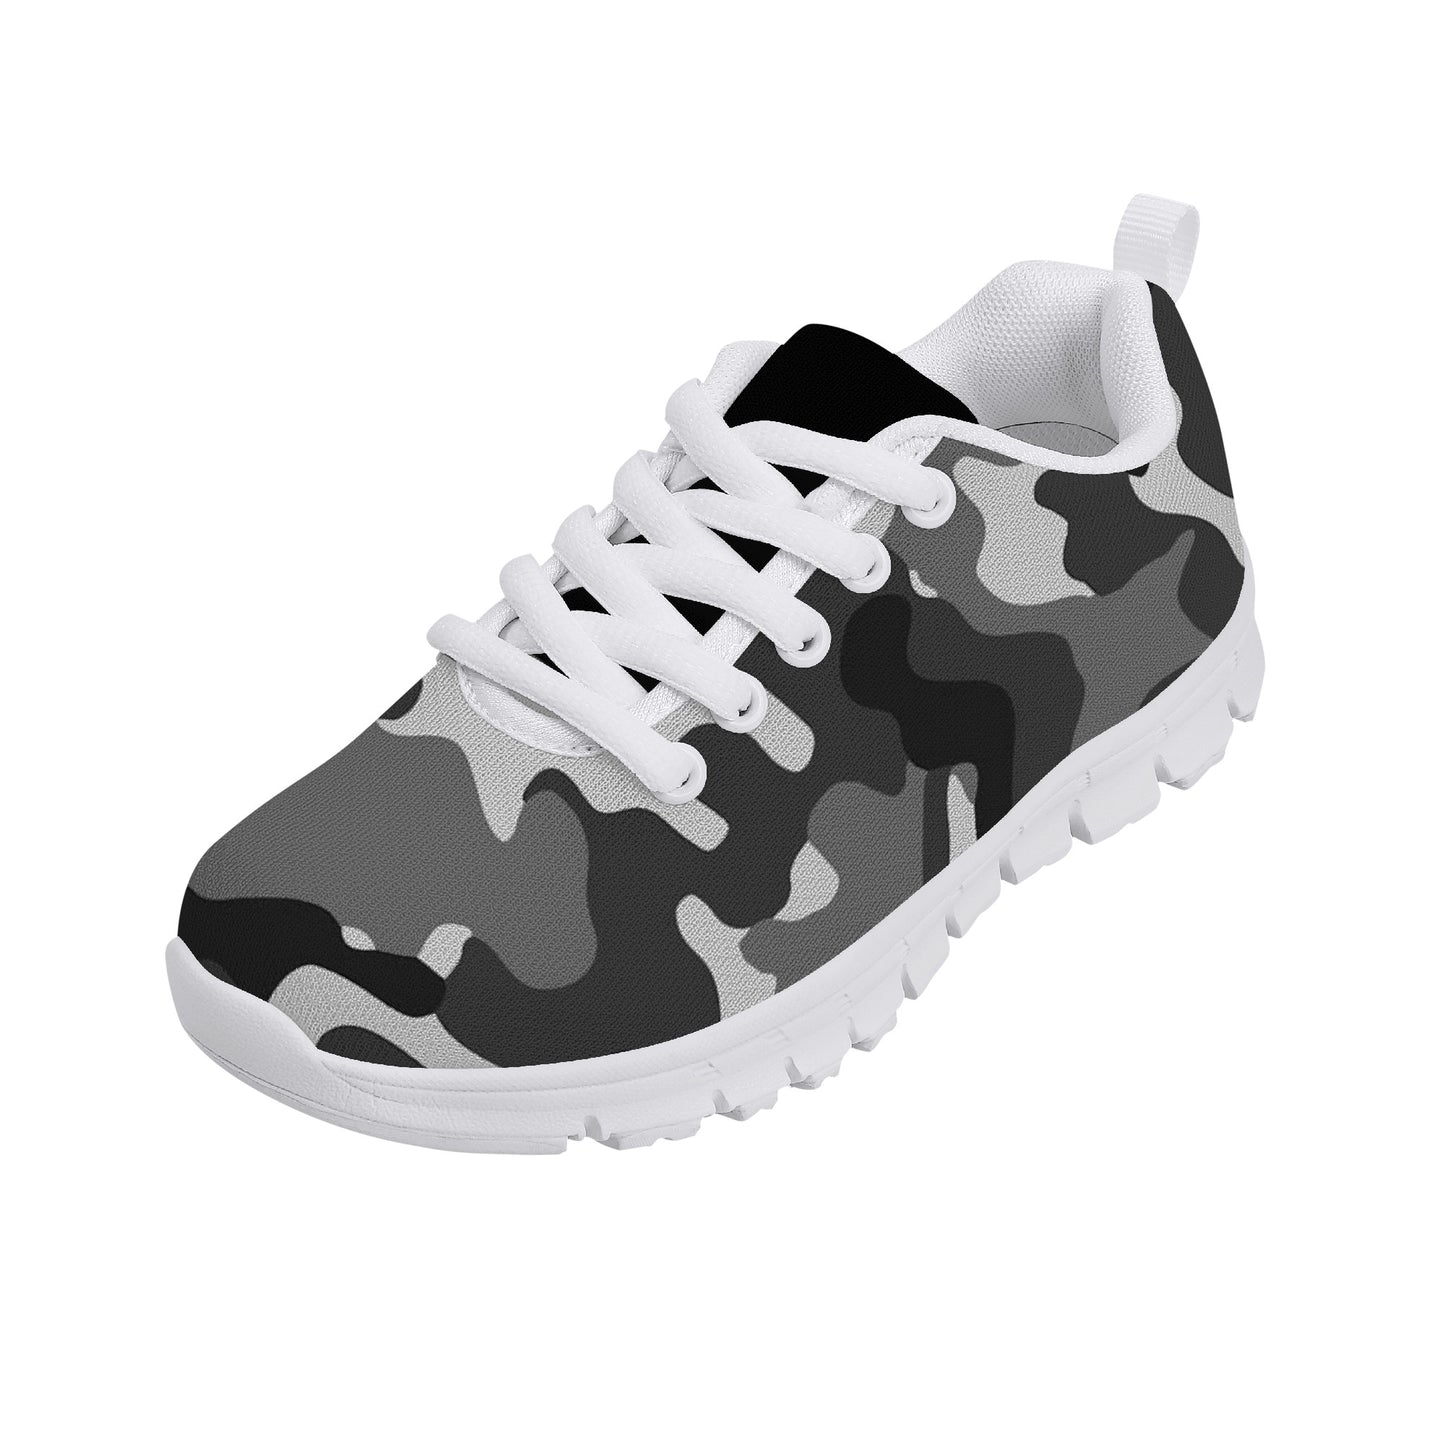 Kids Sneakers - Black/Grey